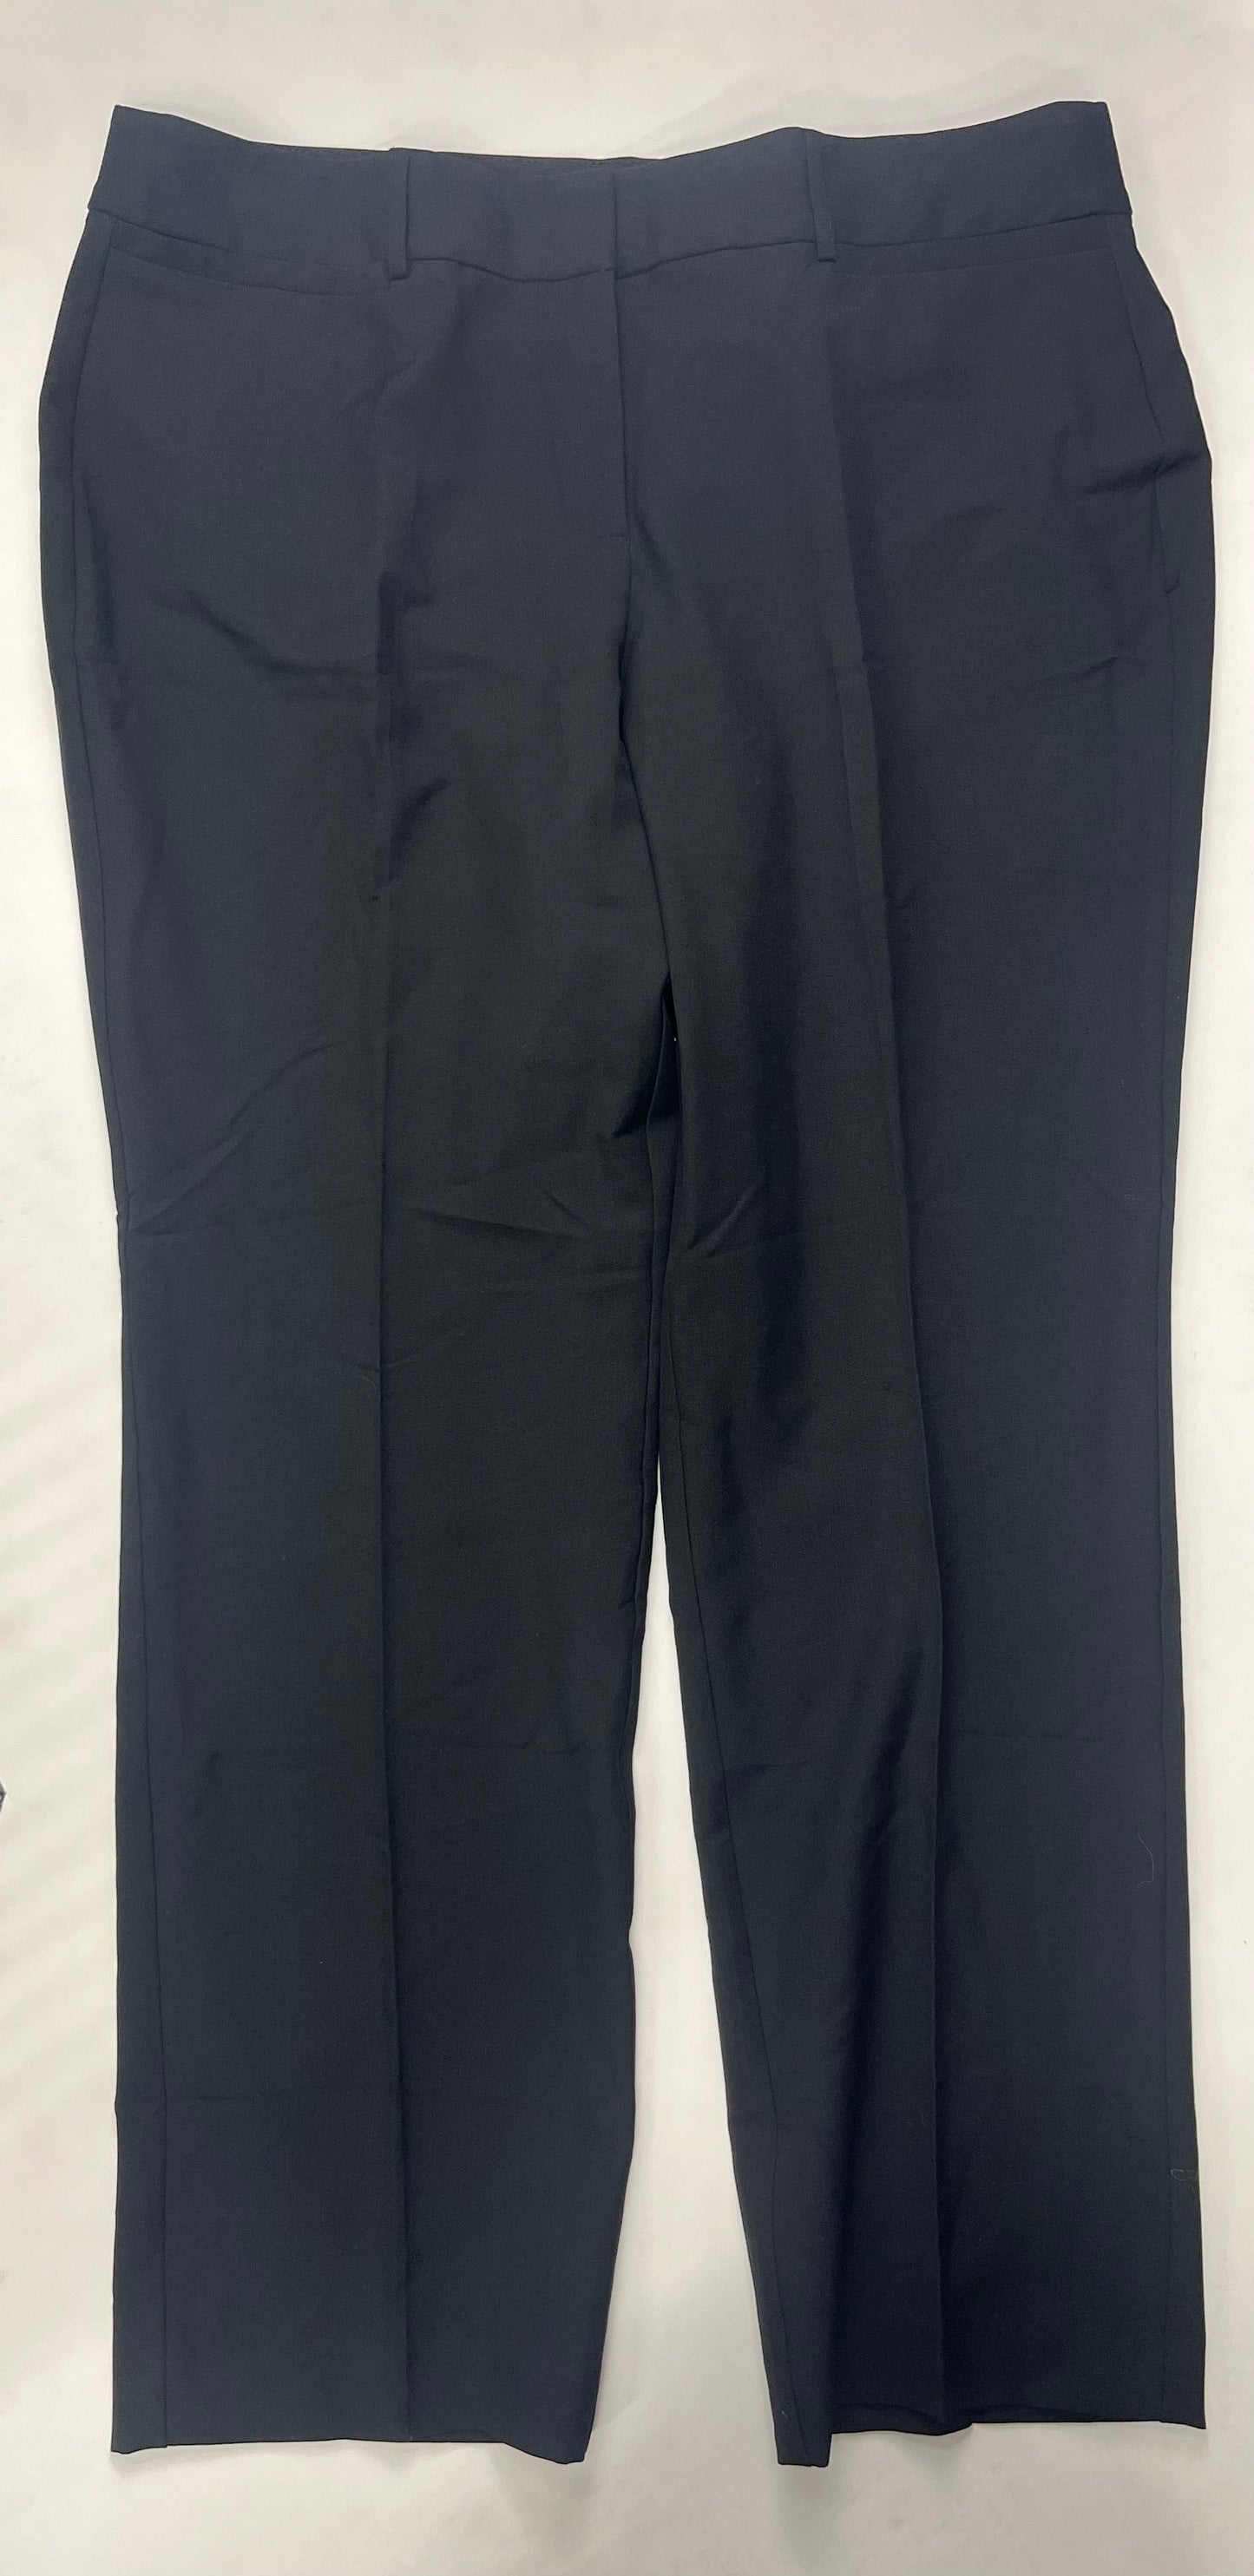 Black Pants Work/dress Lane Bryant, Size 16